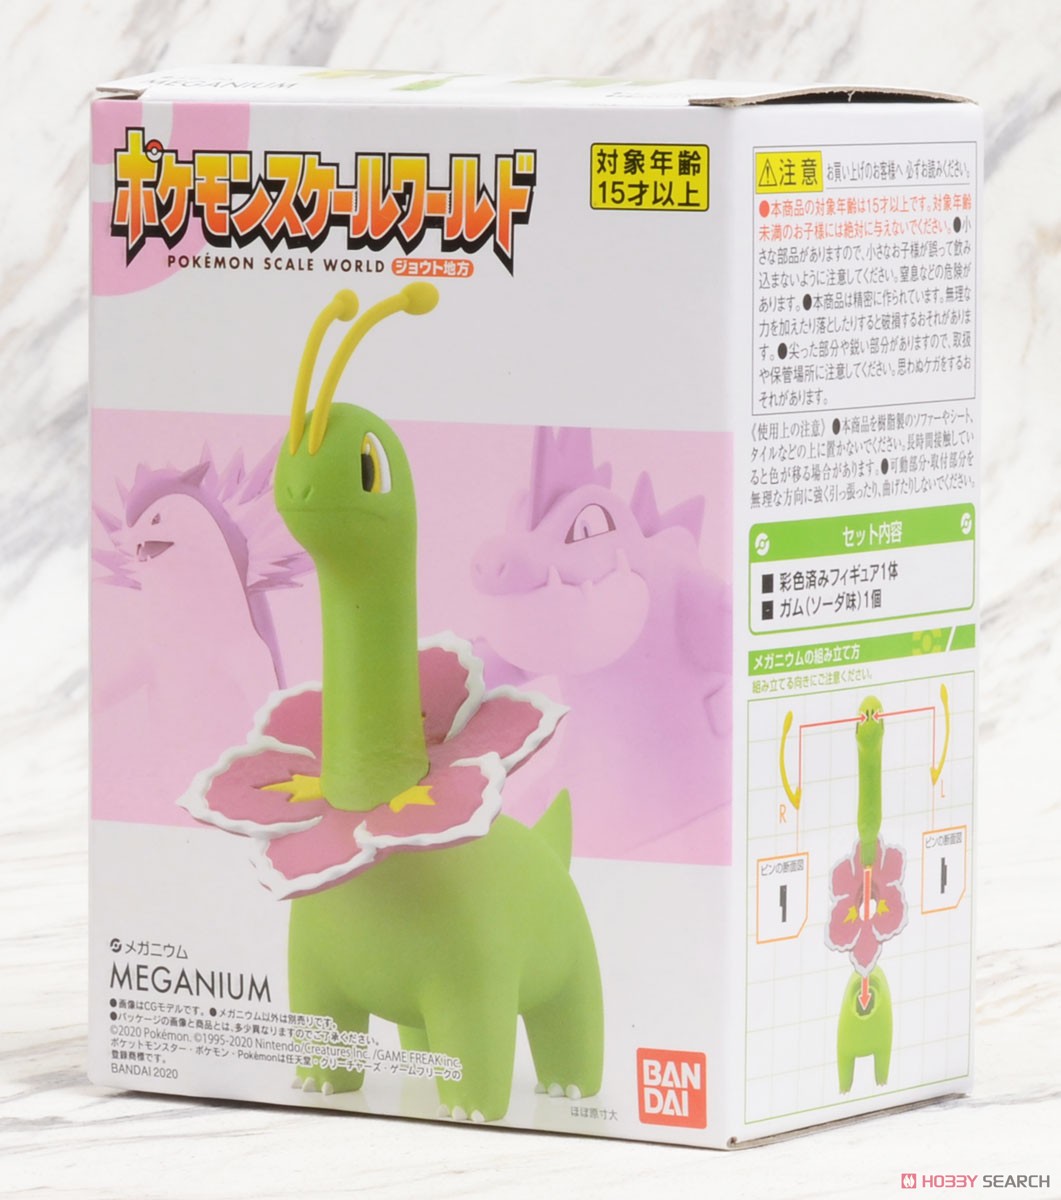 *Pokemon Scale World Johto Meganium (Shokugan) Package1